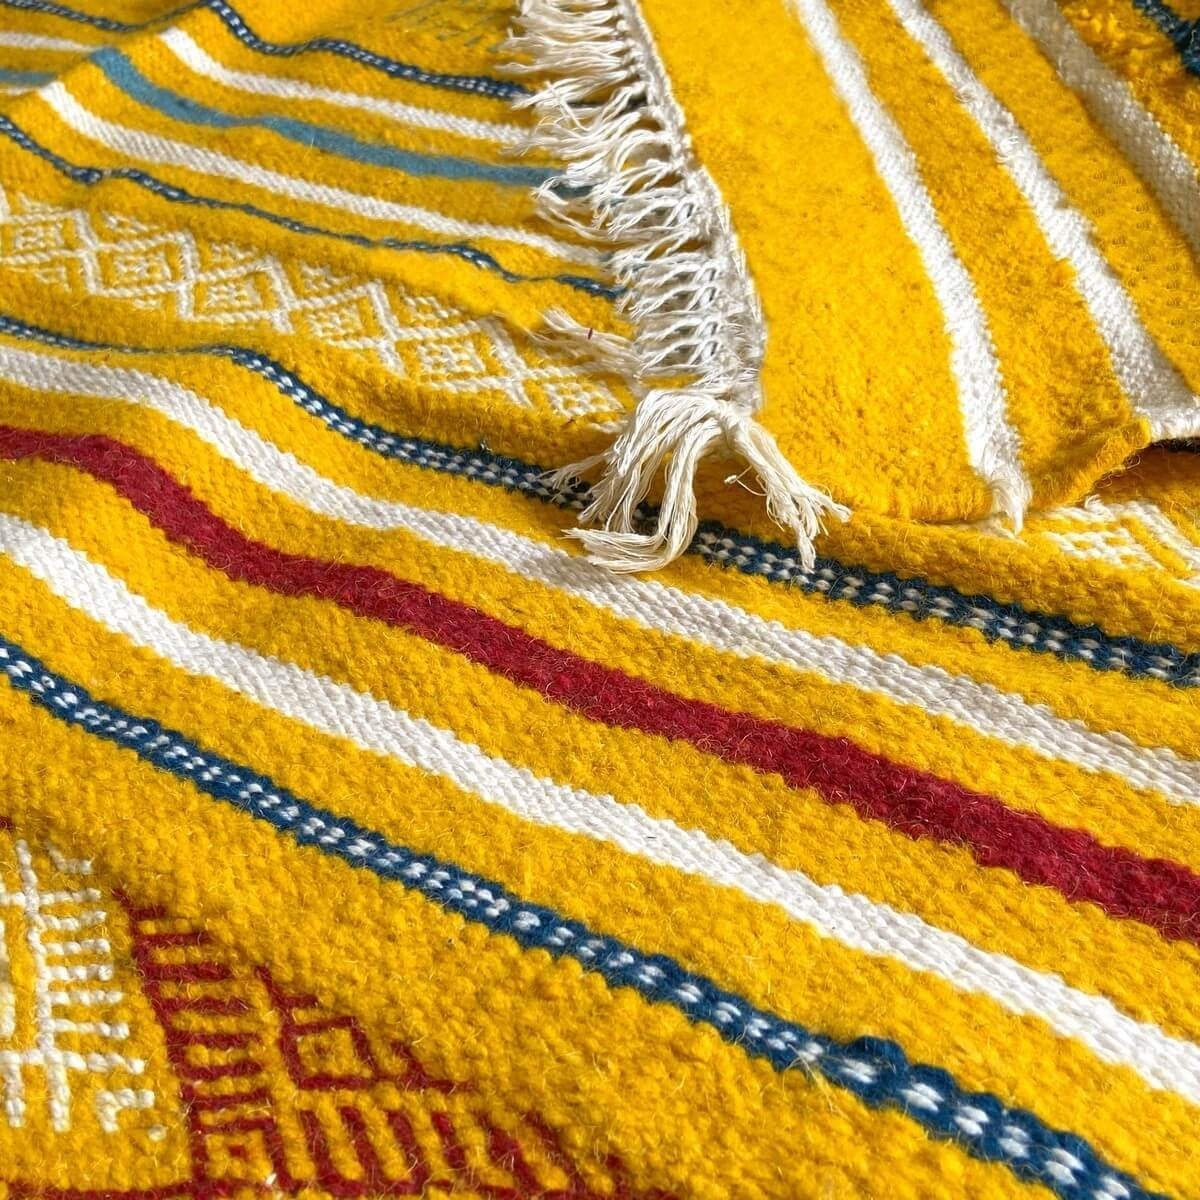 Berber Teppich Teppich Kelim Sahraoui 144x258 Gelb/Weiss (Handgewebt, Wolle) Tunesischer Kelim-Teppich im marokkanischen Stil. R